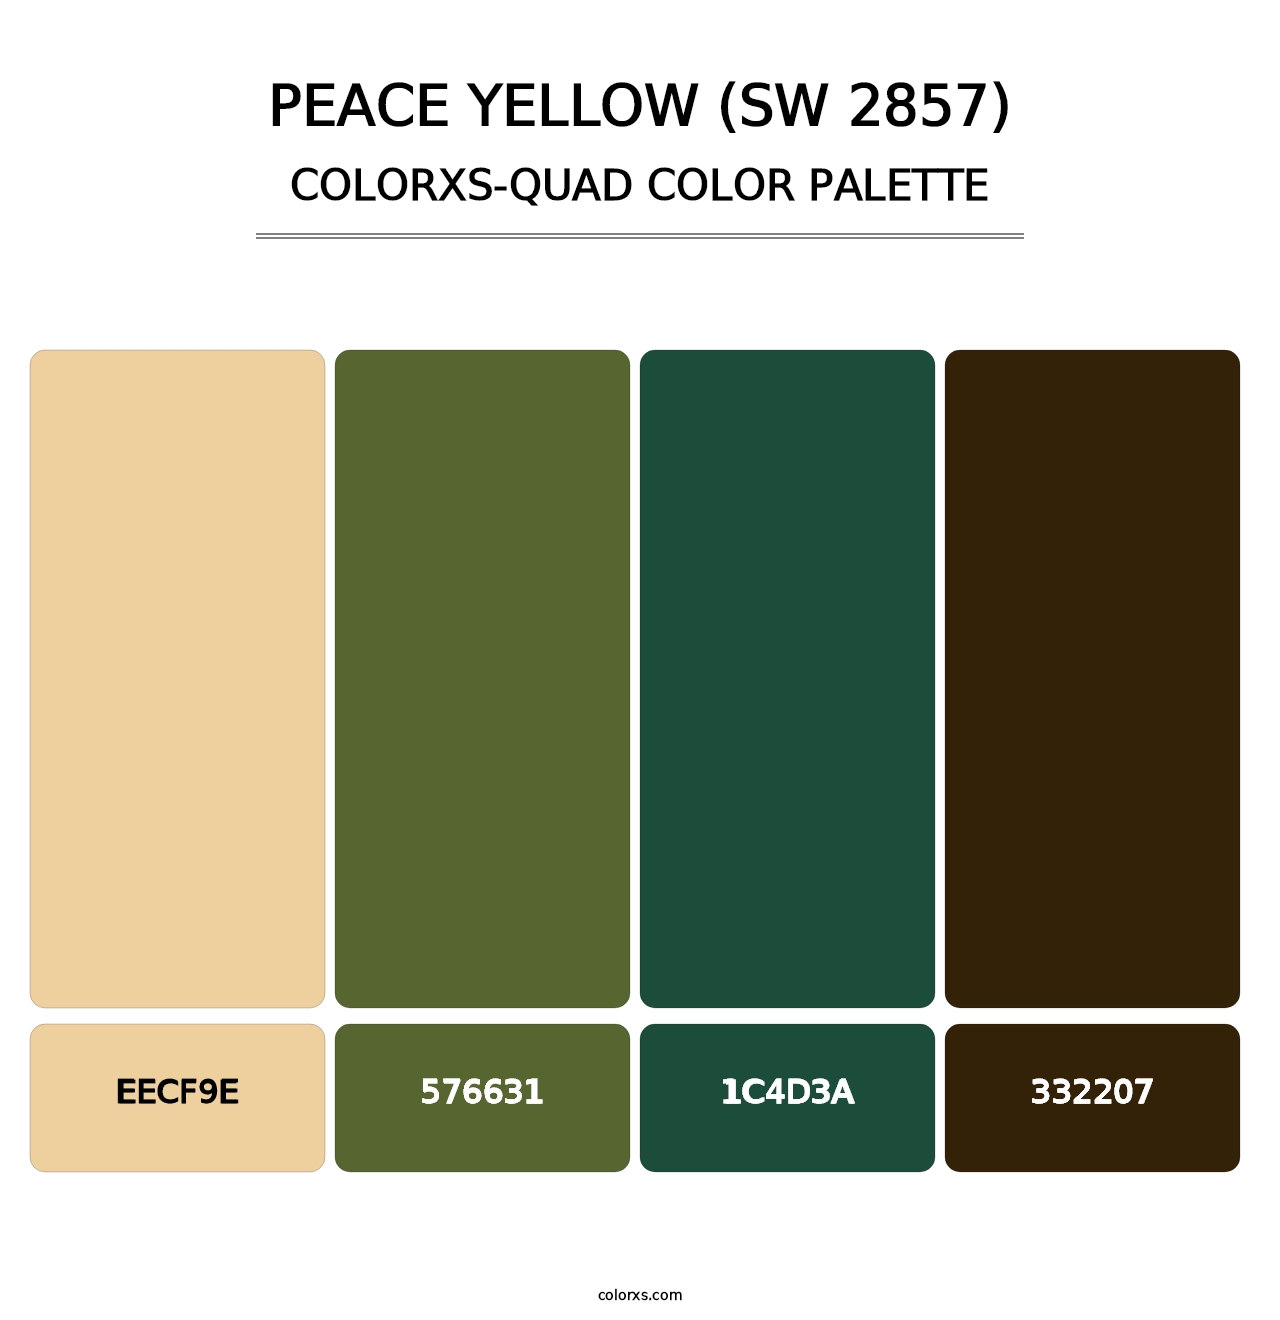 Peace Yellow (SW 2857) - Colorxs Quad Palette